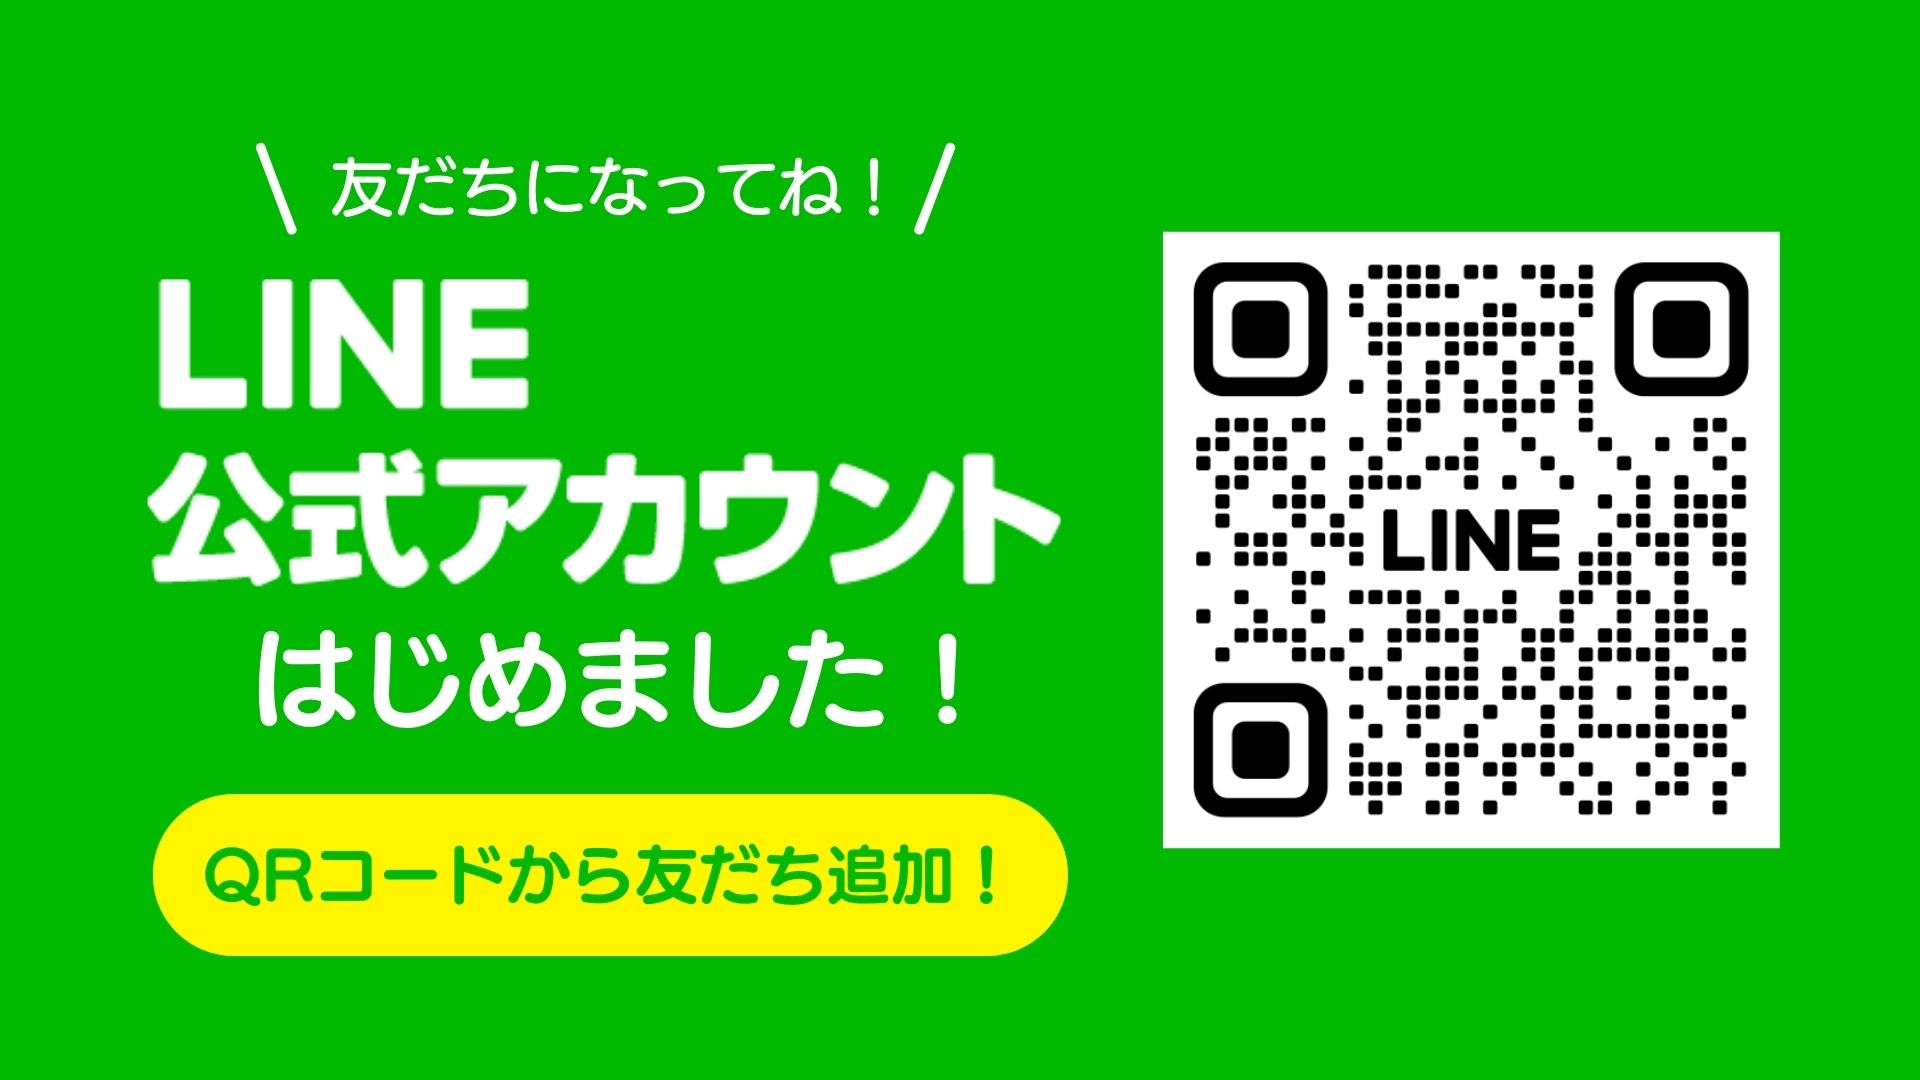 東大阪店公式LINE